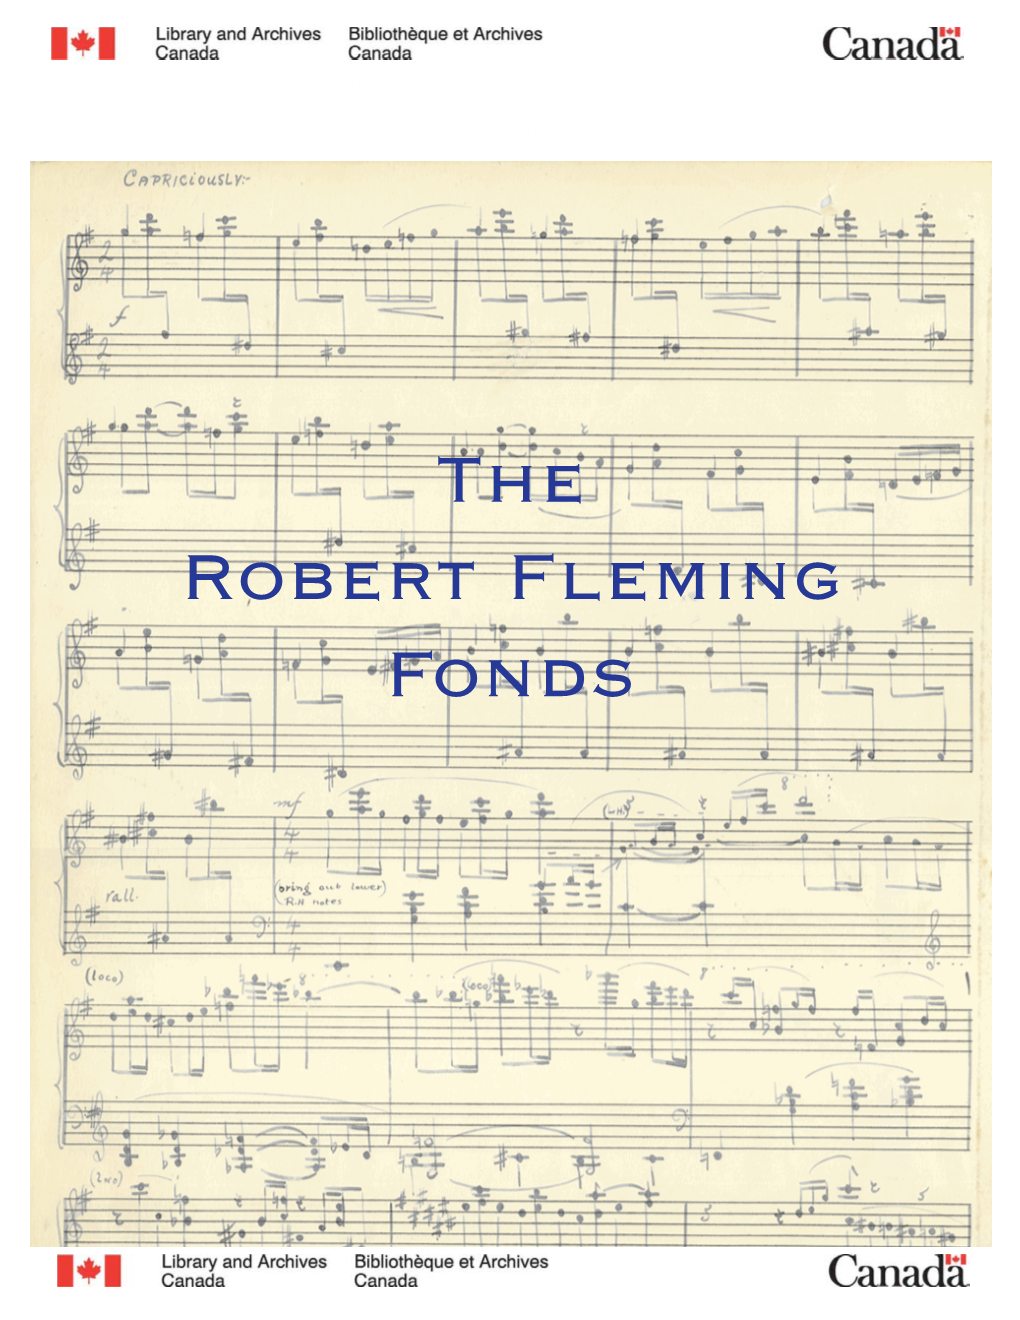 Robert Fleming Fonds the Robert Fleming Fonds